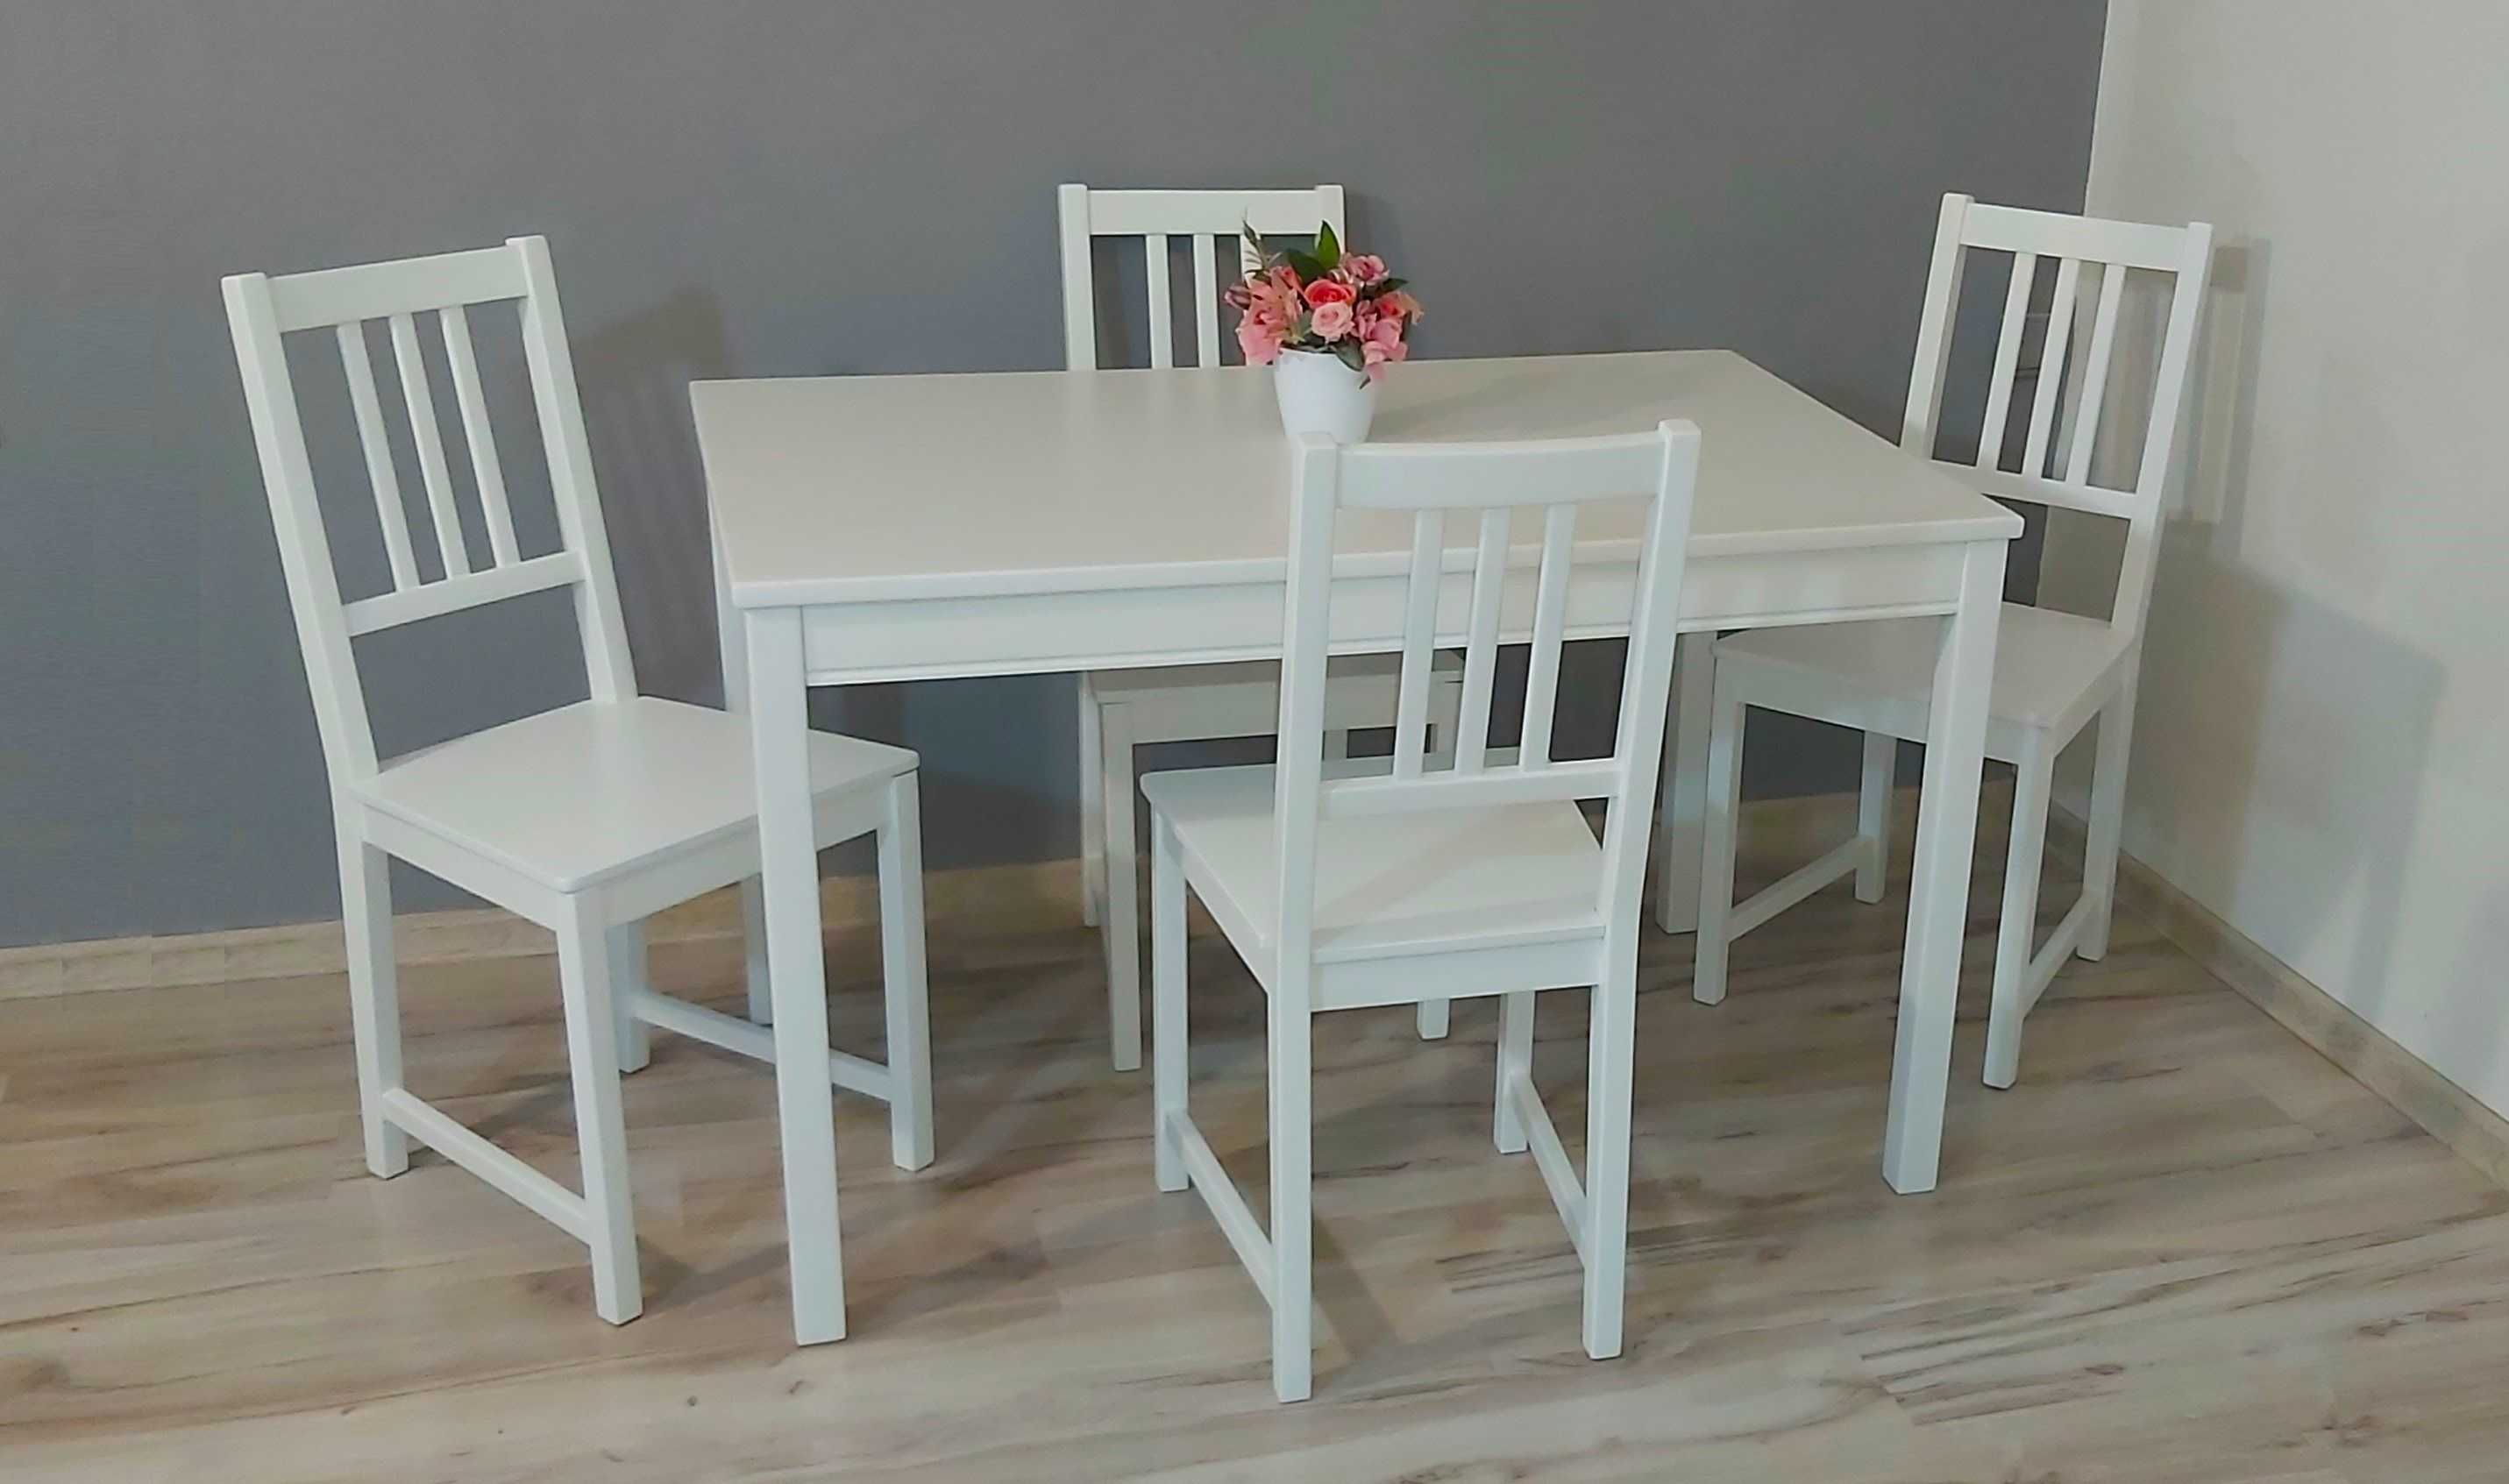 Drewniany stół + 4 drewniane krzesła IKEA - możliwa dostawa!